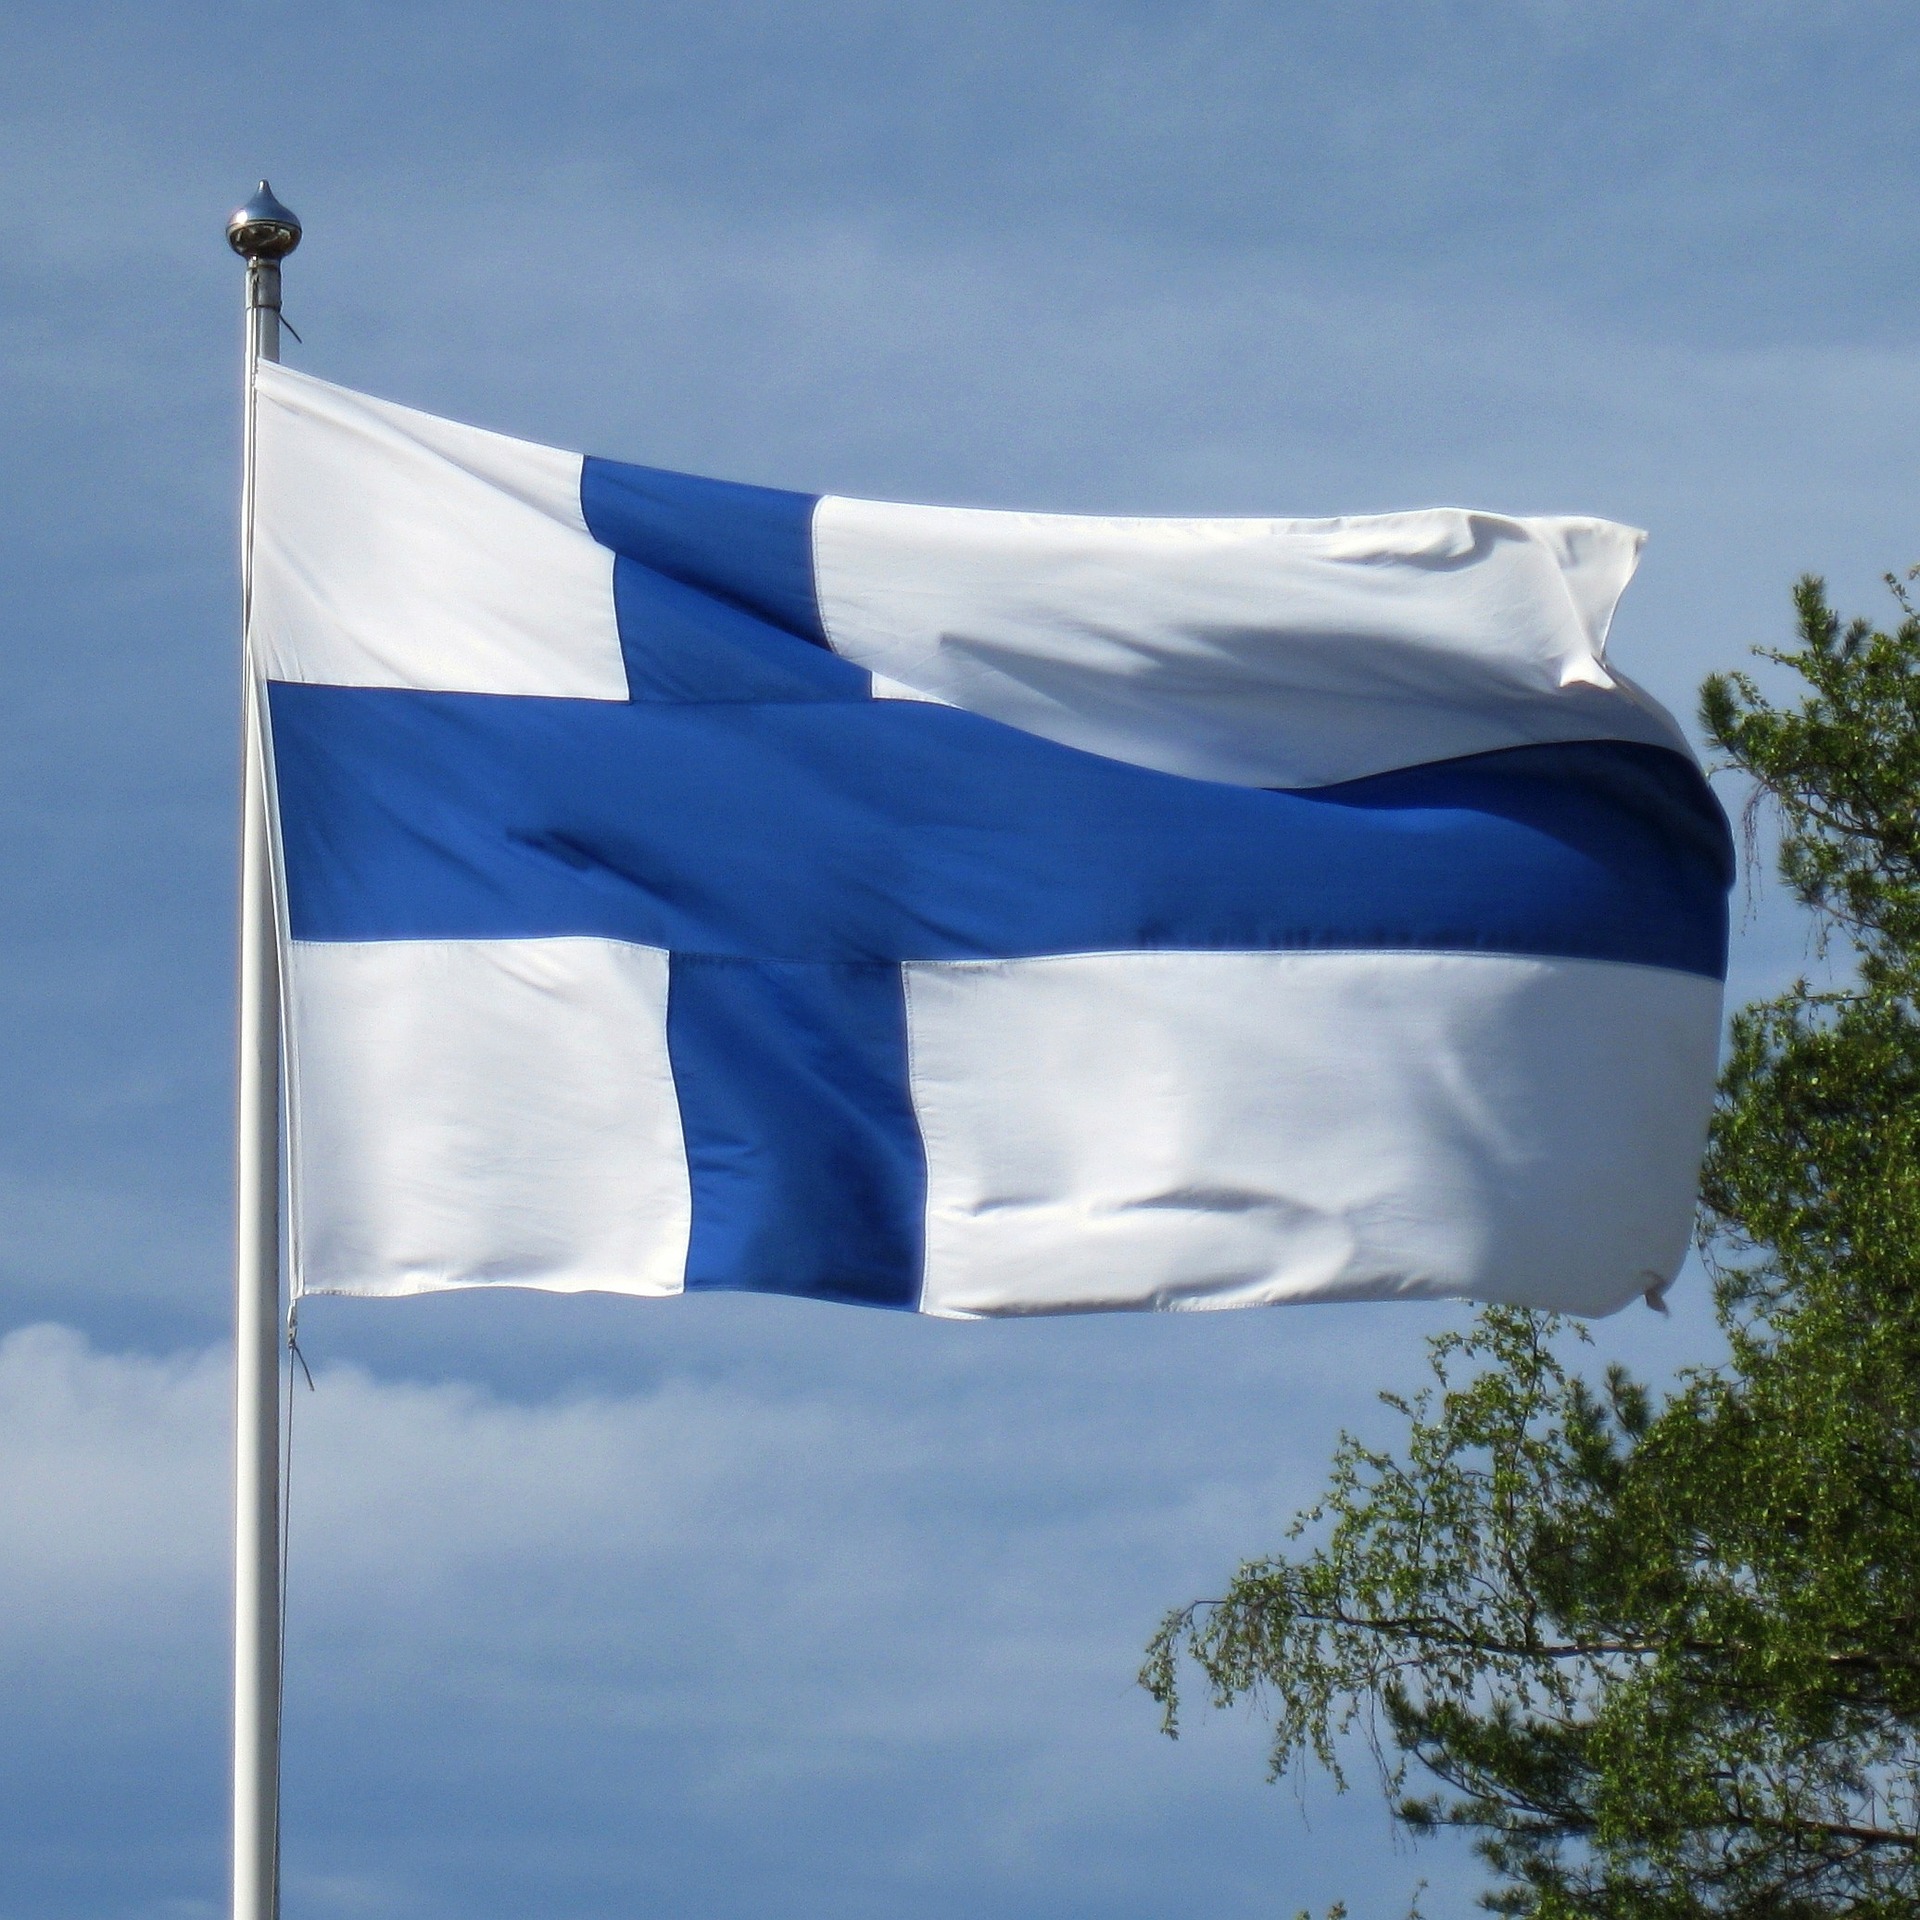 Finnish flag. Photo by Hietaparta on Pixabay.